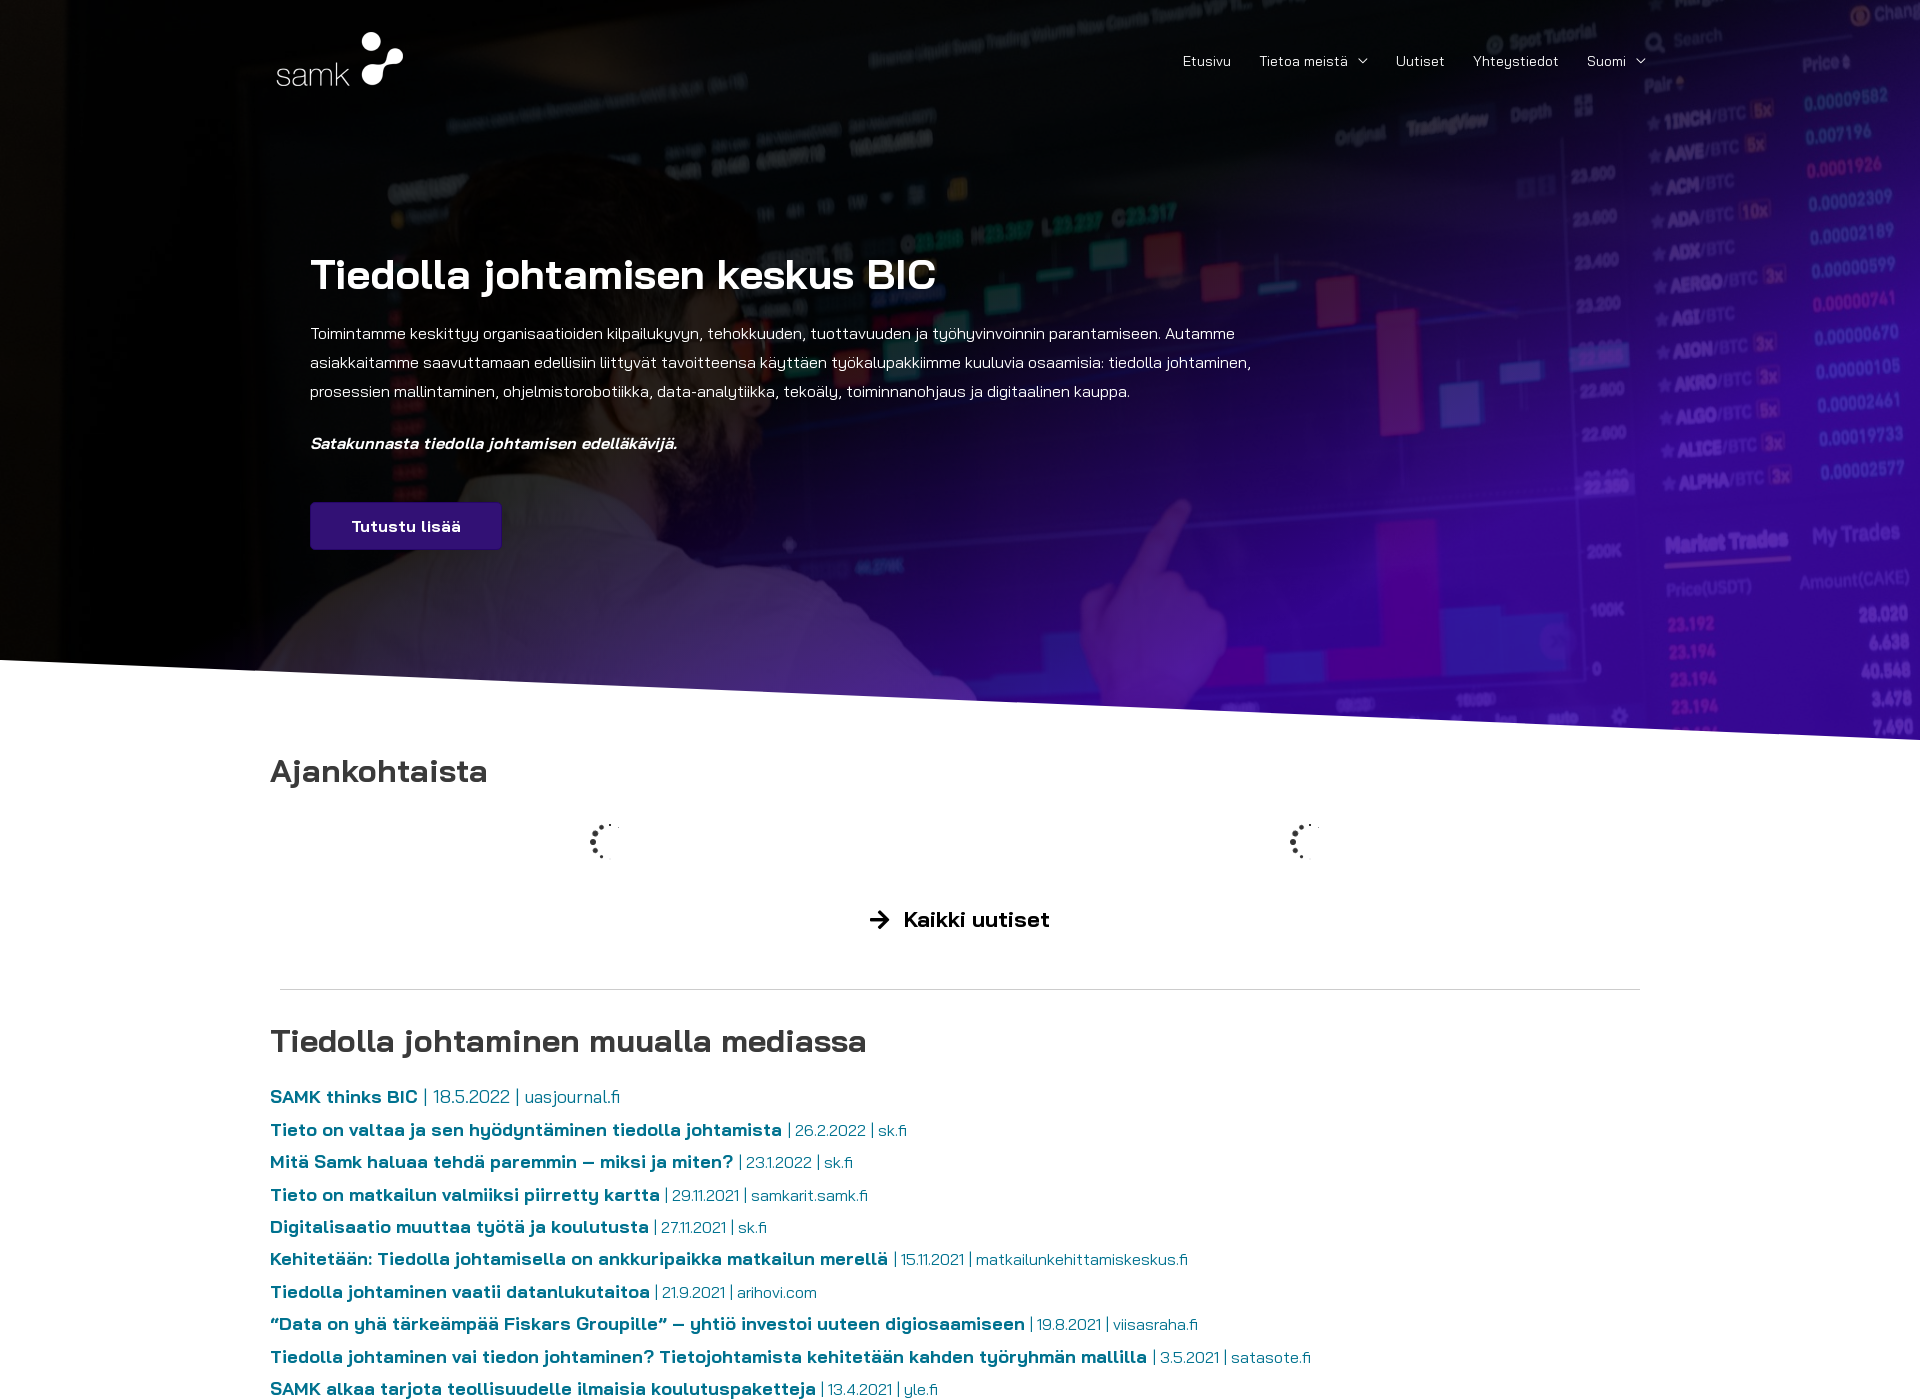 Skärmdump för tiedollajohtaminen.fi